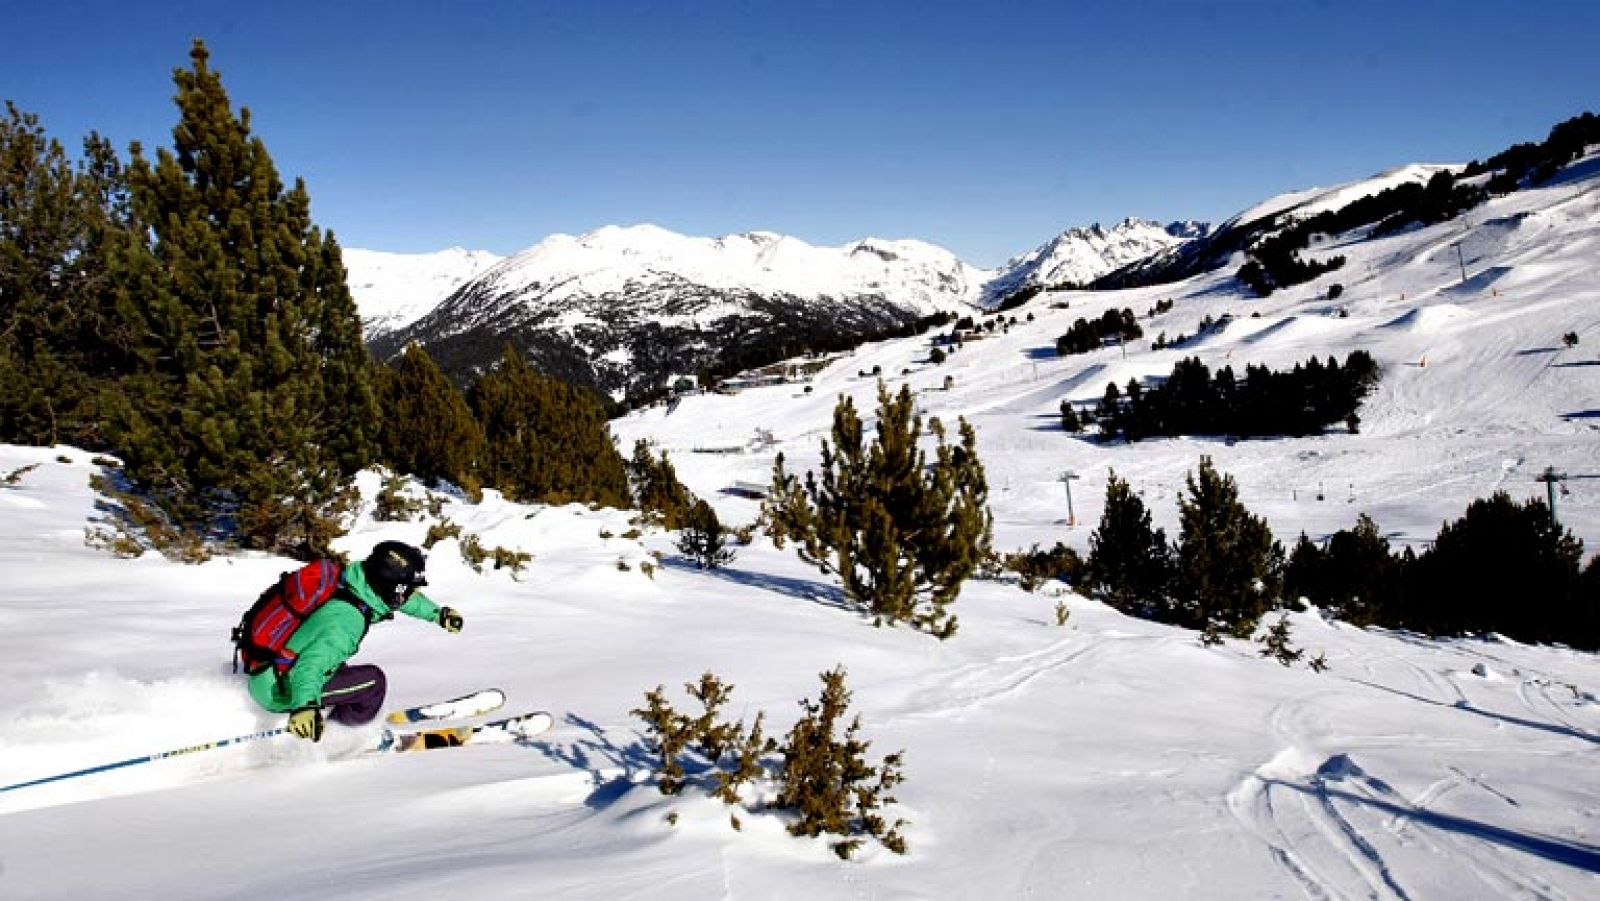 Se cumplen 10 años de la Gran Unión de Estaciones, el momento en el que los 6 sectores de Grandvalira se unieron para crear un lugar soñado por todos los esquiadores: 210 kilómetros en los que celebrar, el Dominio de la Nieve.